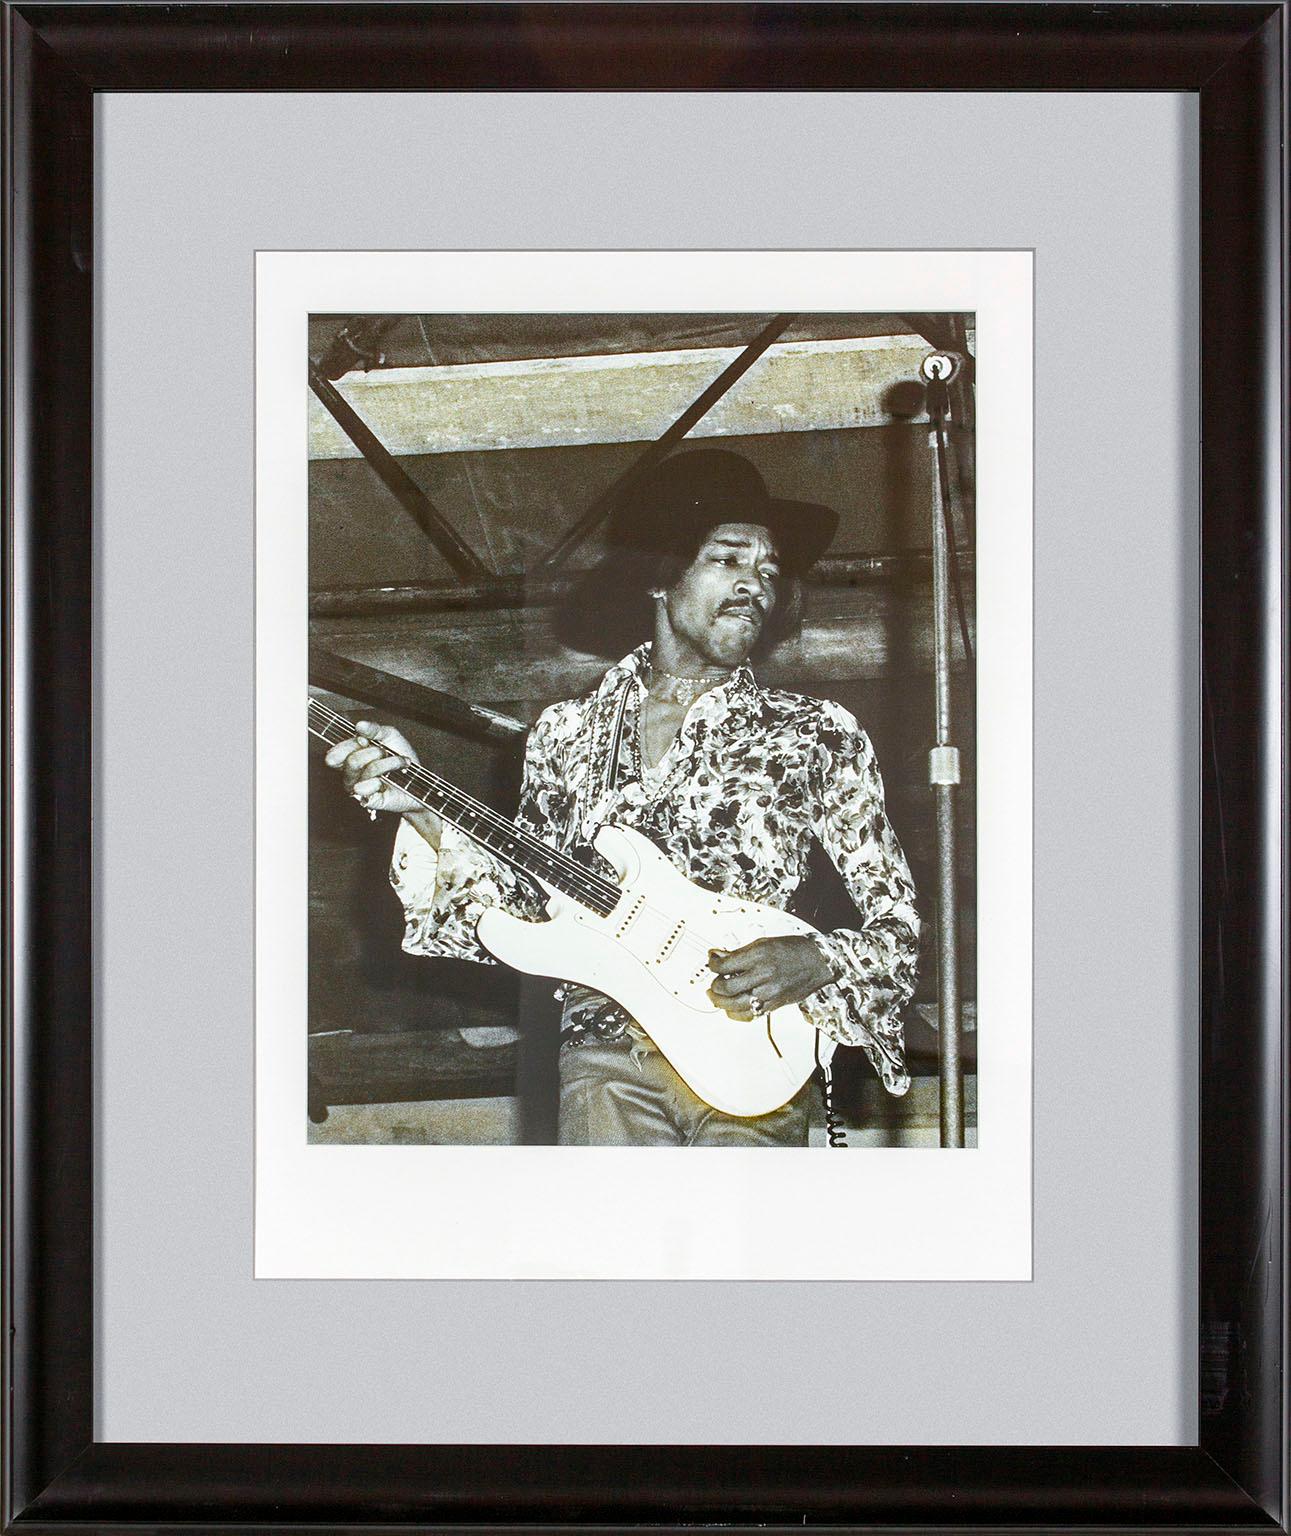 "Jimi Hendrix" gerahmte Schwarz-Weiß-Fotografie von Michael Putland von Jimi Hendrix auf dem Woburn Music Festival in England am 6. Juli 1968.  Bildgröße: 19 1/2 x 15 1/4 Zoll. Dieses Foto wurde früher in einem Gästezimmer des ursprünglichen Hard